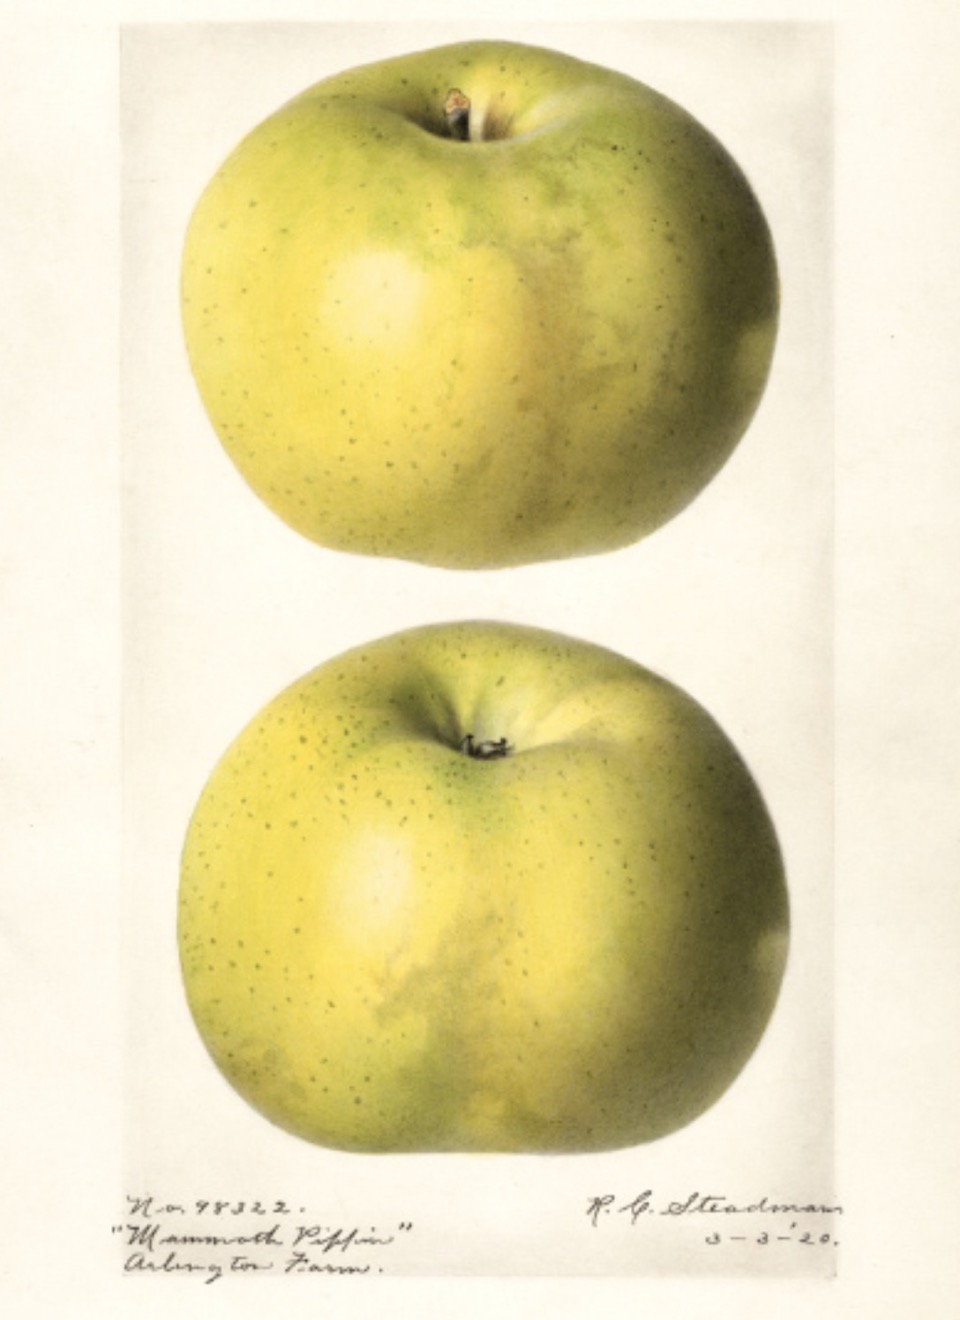 Historische Abbildung zweier grün-gelblicher Äpfel; USDA